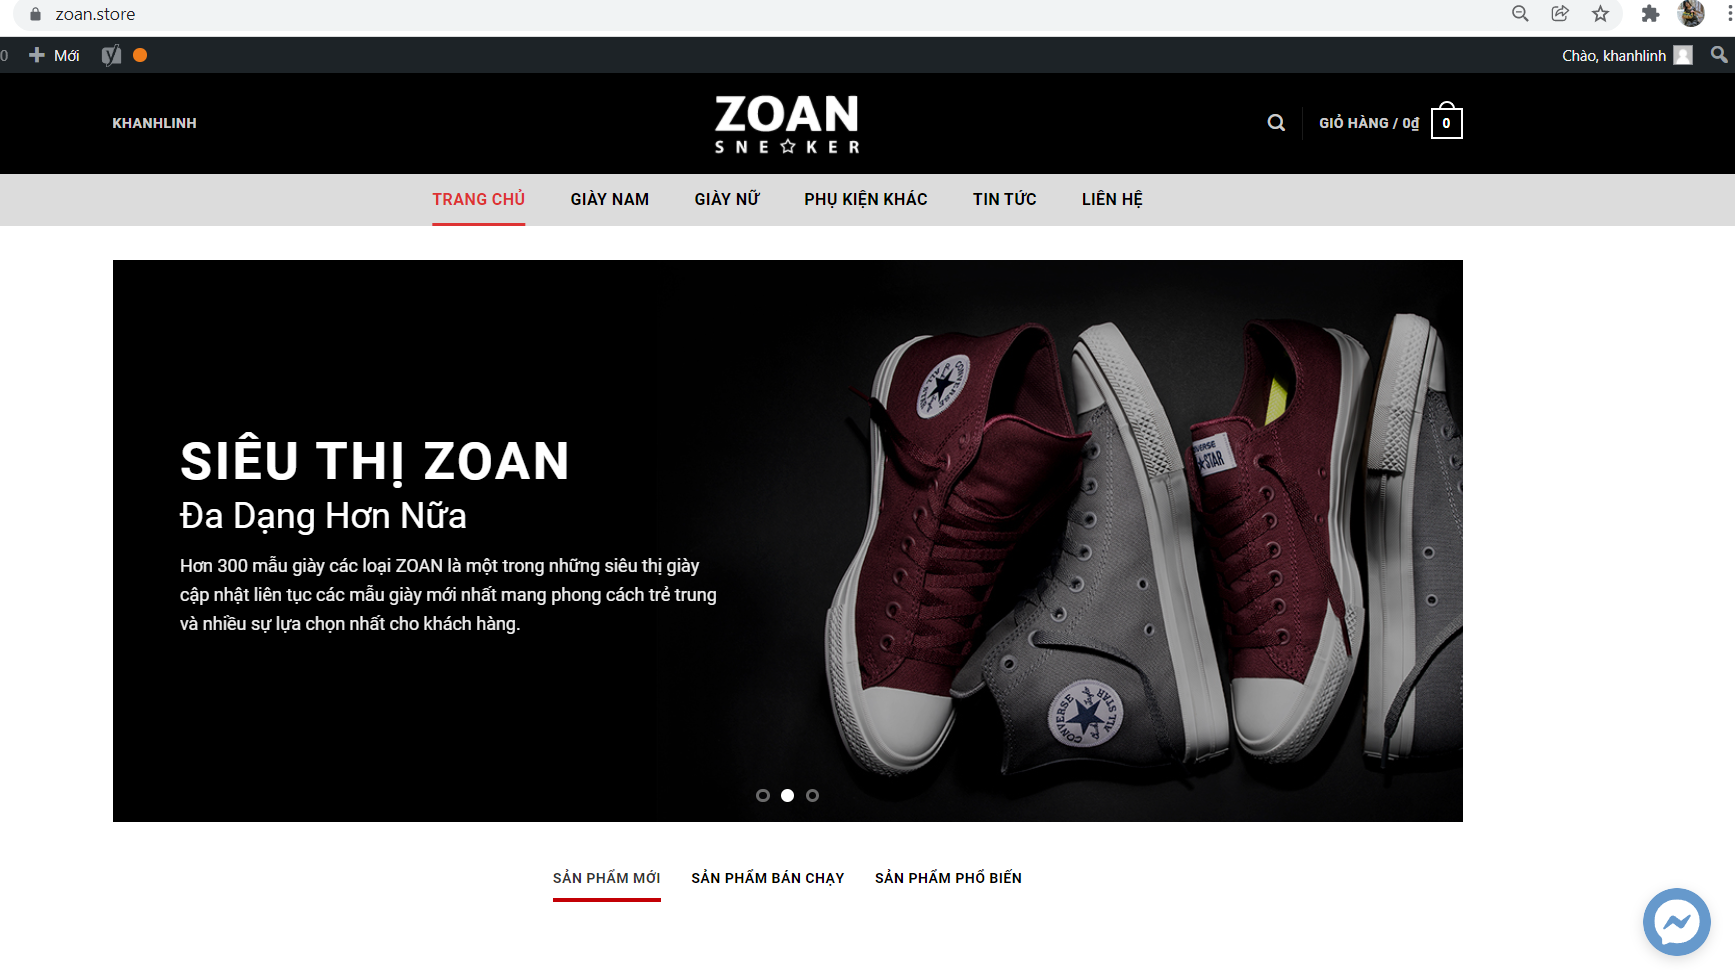 trang chủ giày ZOAN, siêu thị giày ZOAN, ZOAN store